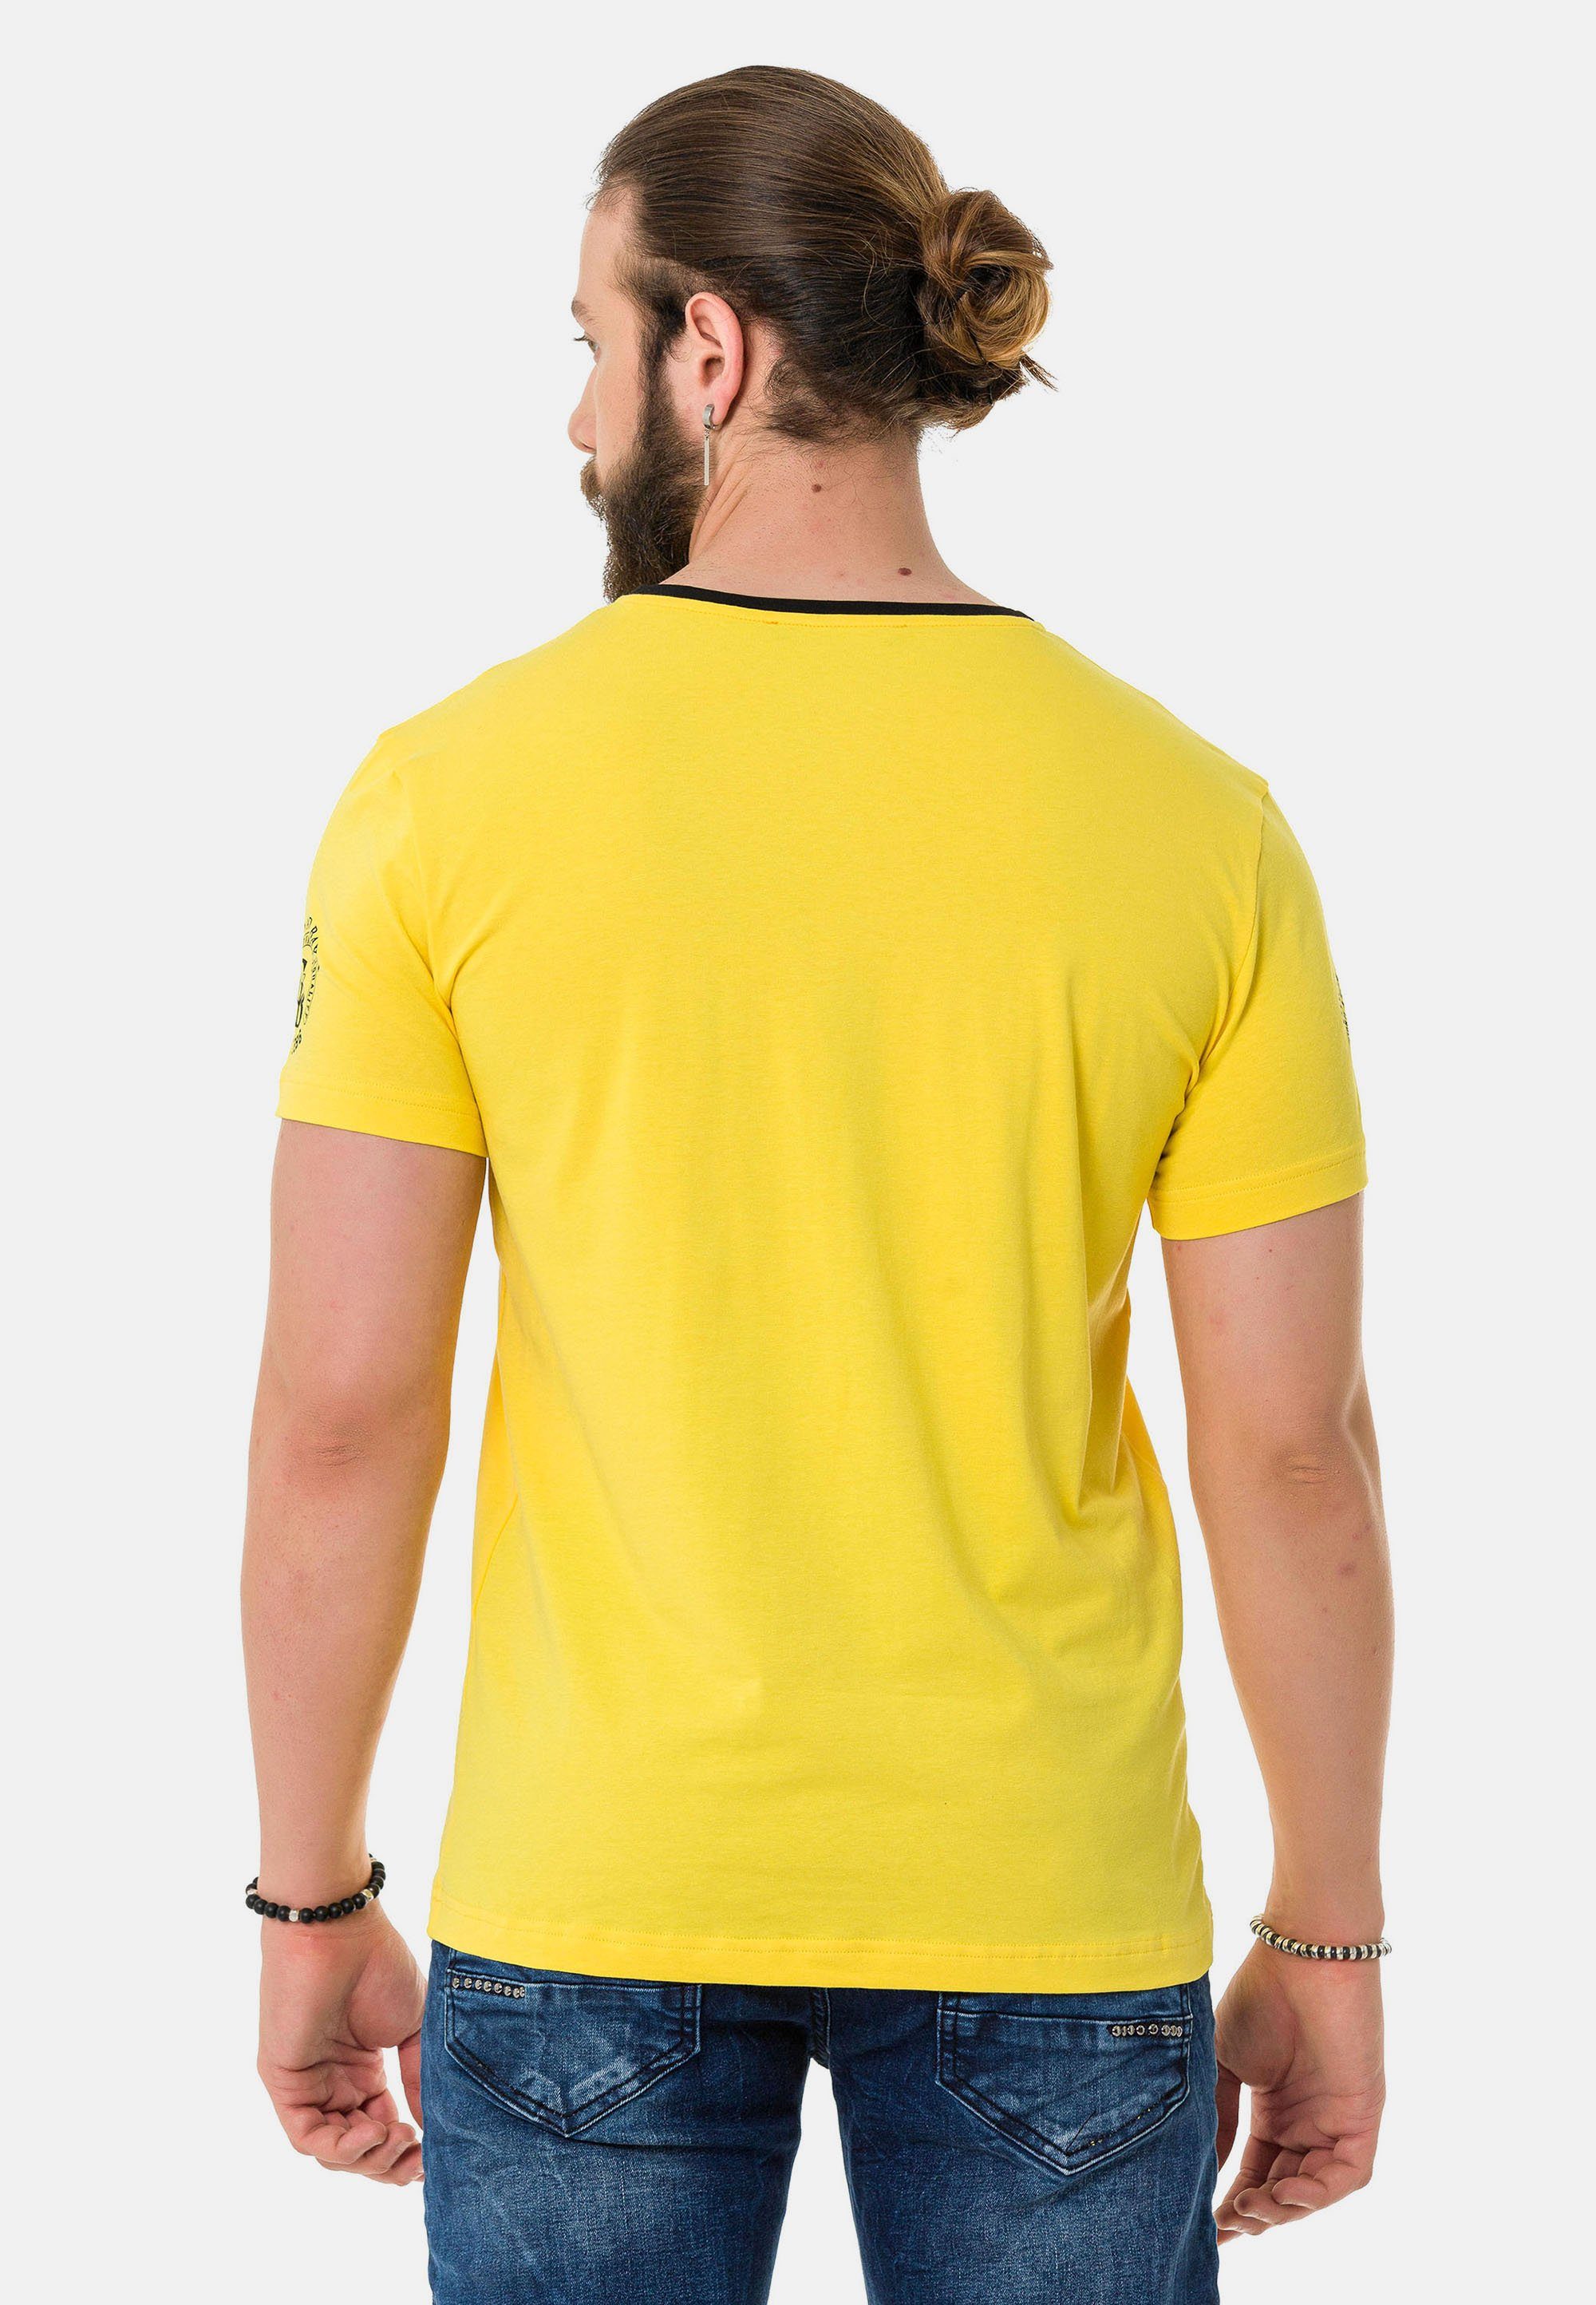 Cipo & Baxx T-Shirt mit gelb Markenlogos dezenten